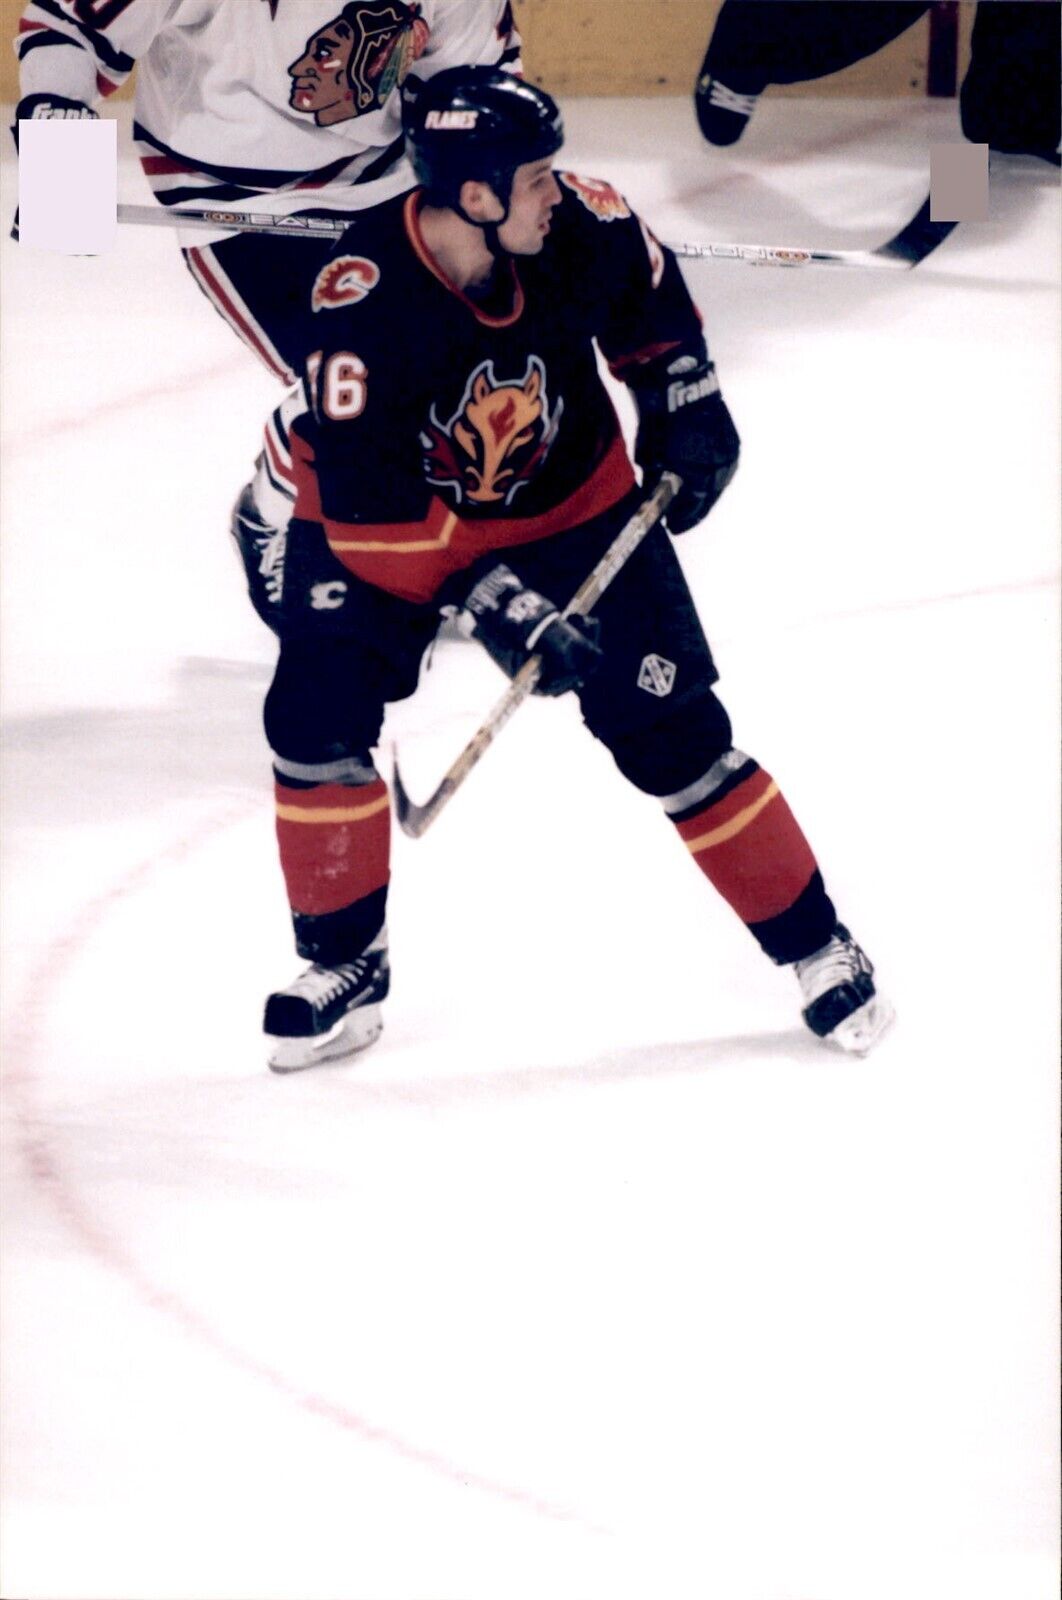 PF29 2000 Original Photo RONALD PETROVICKY CALGARY FLAMES RIGHT WING NHL HOCKEY